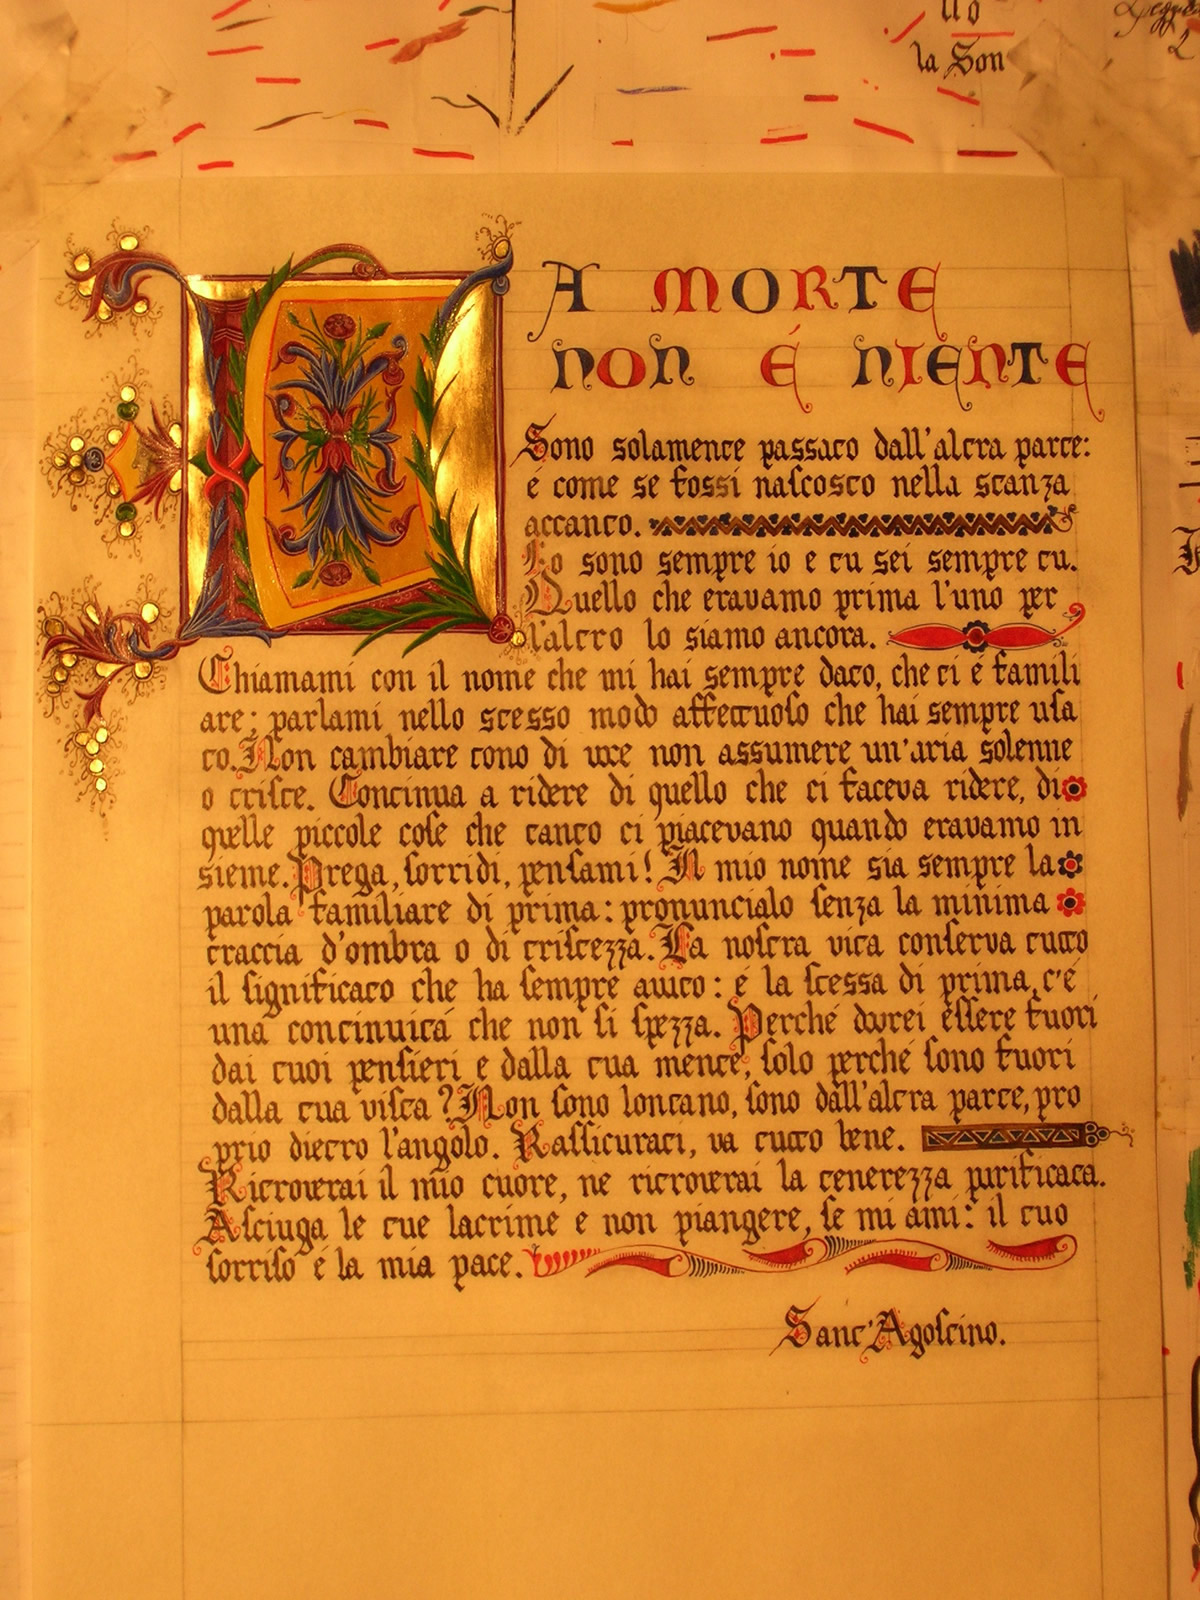 Manuscript in miniature, cm. 35 x 50 on parchment paper.